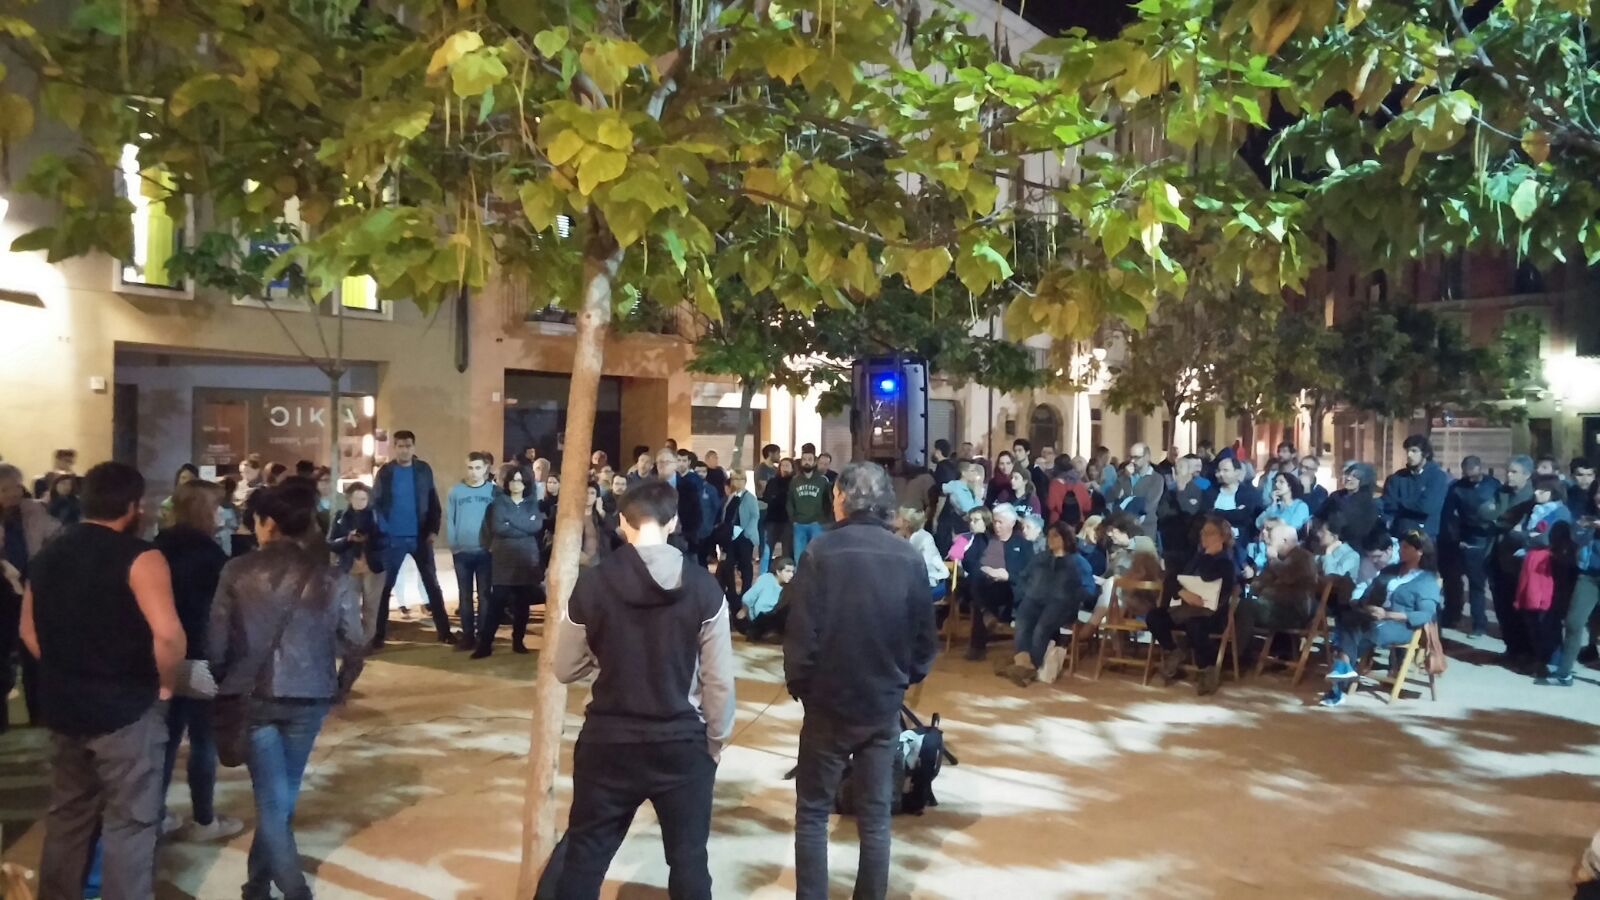 Més de 200 persones van assistir a l'assemblea a la plaça Gaudí